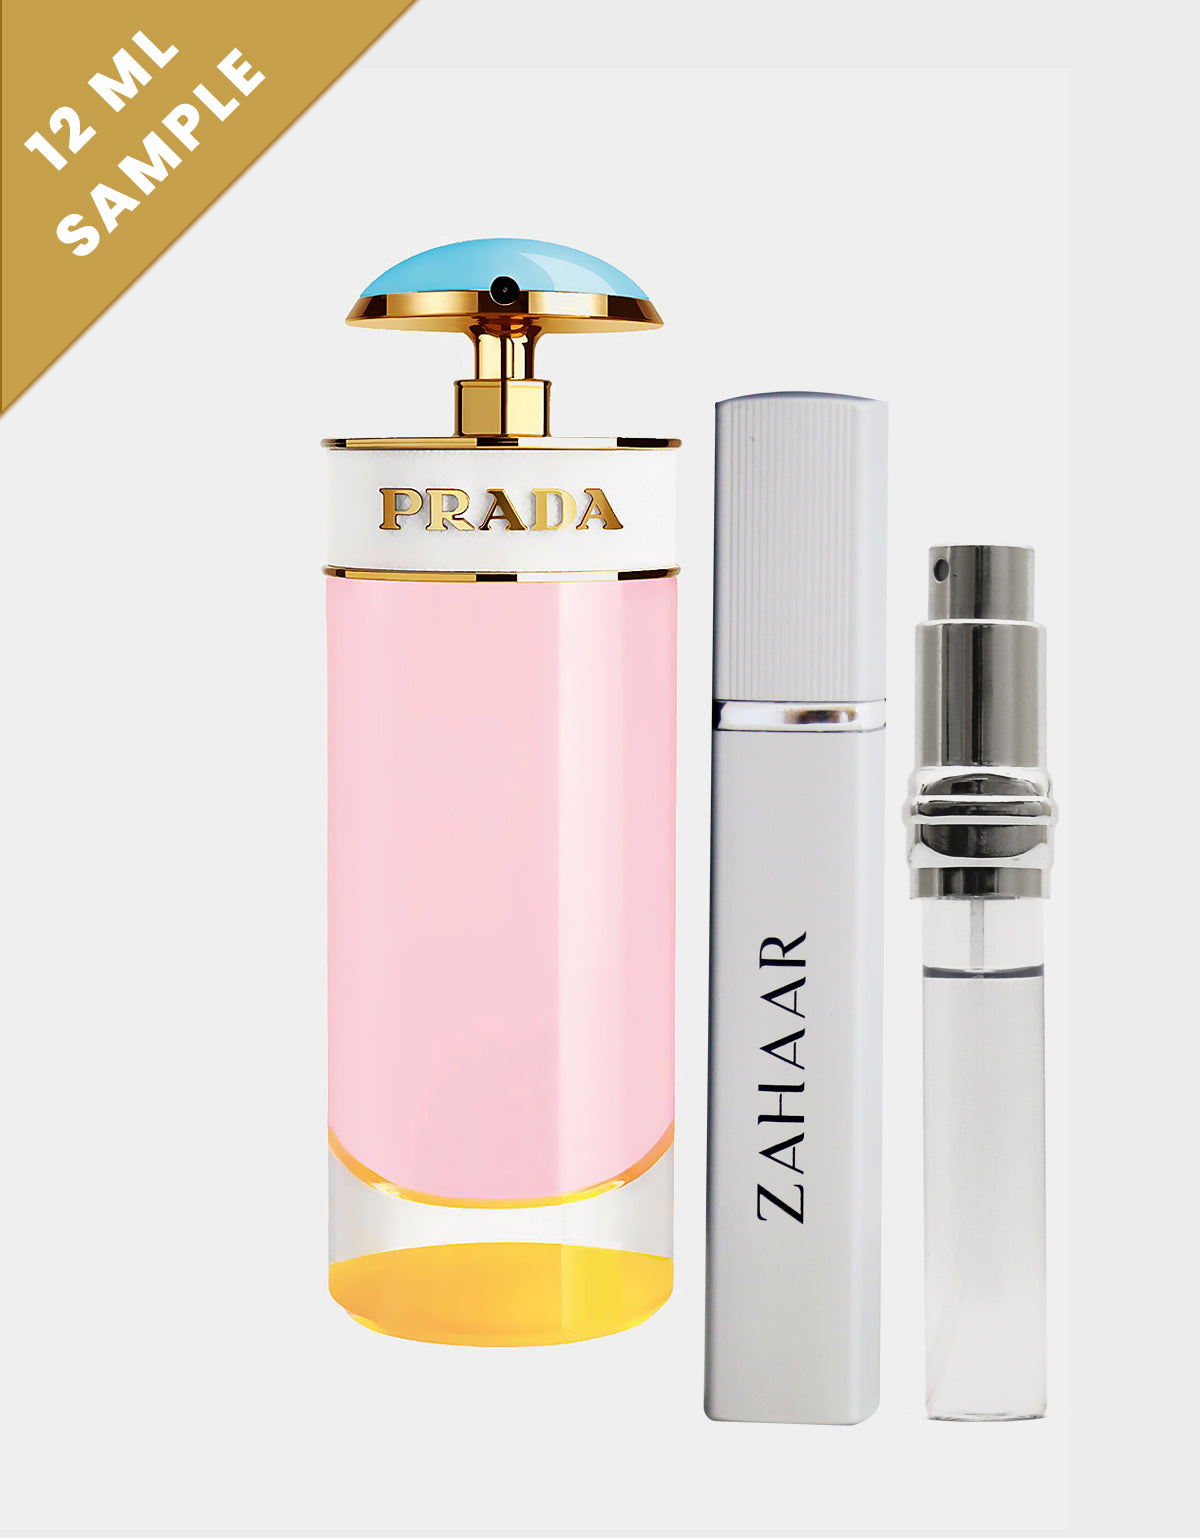 De Online Pop -Eau - Prada UAE in Zahaar Candy by Parfum- Sugar